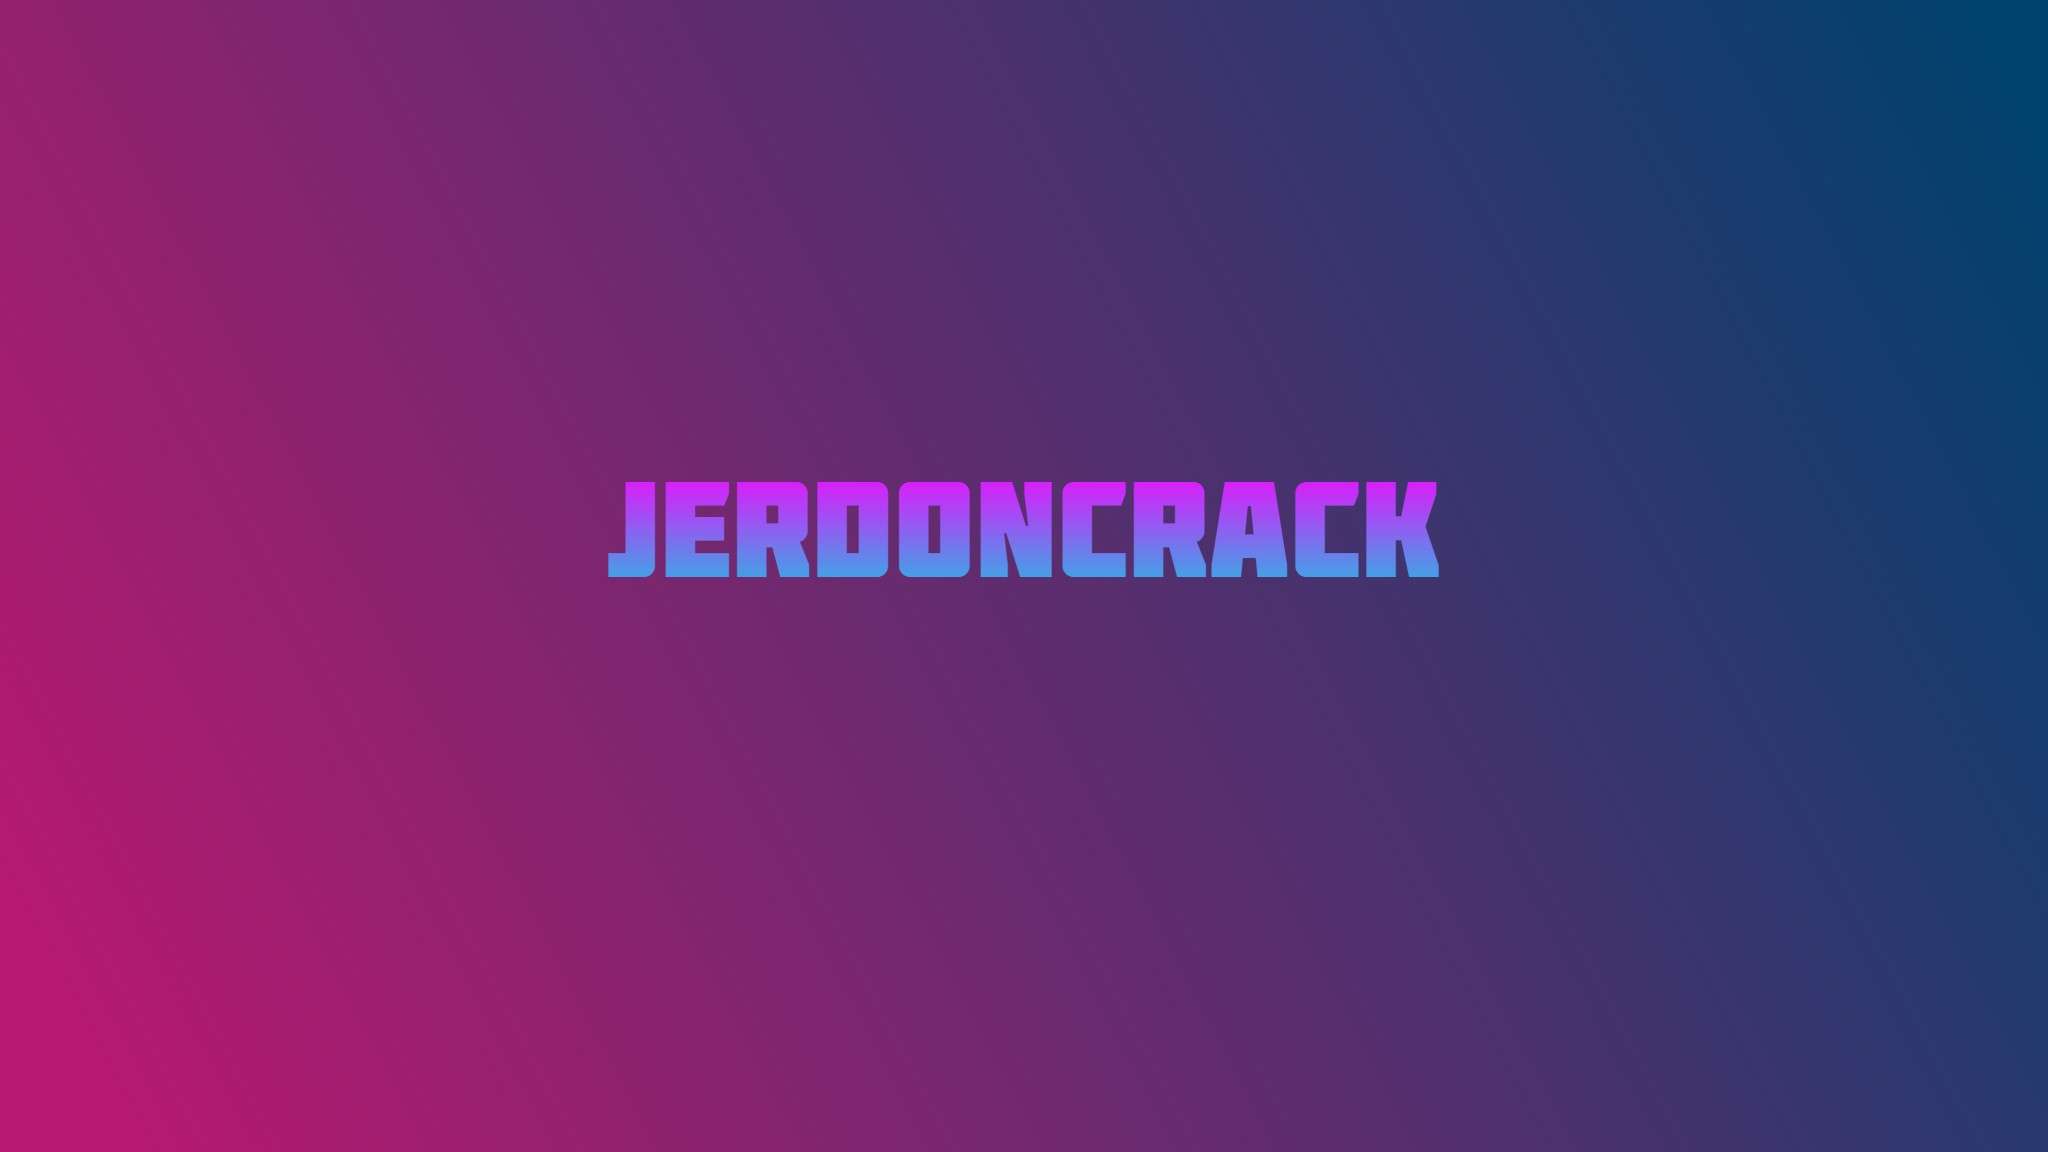 Jerdoncrack16x 16x by Jerdoncrack on PvPRP